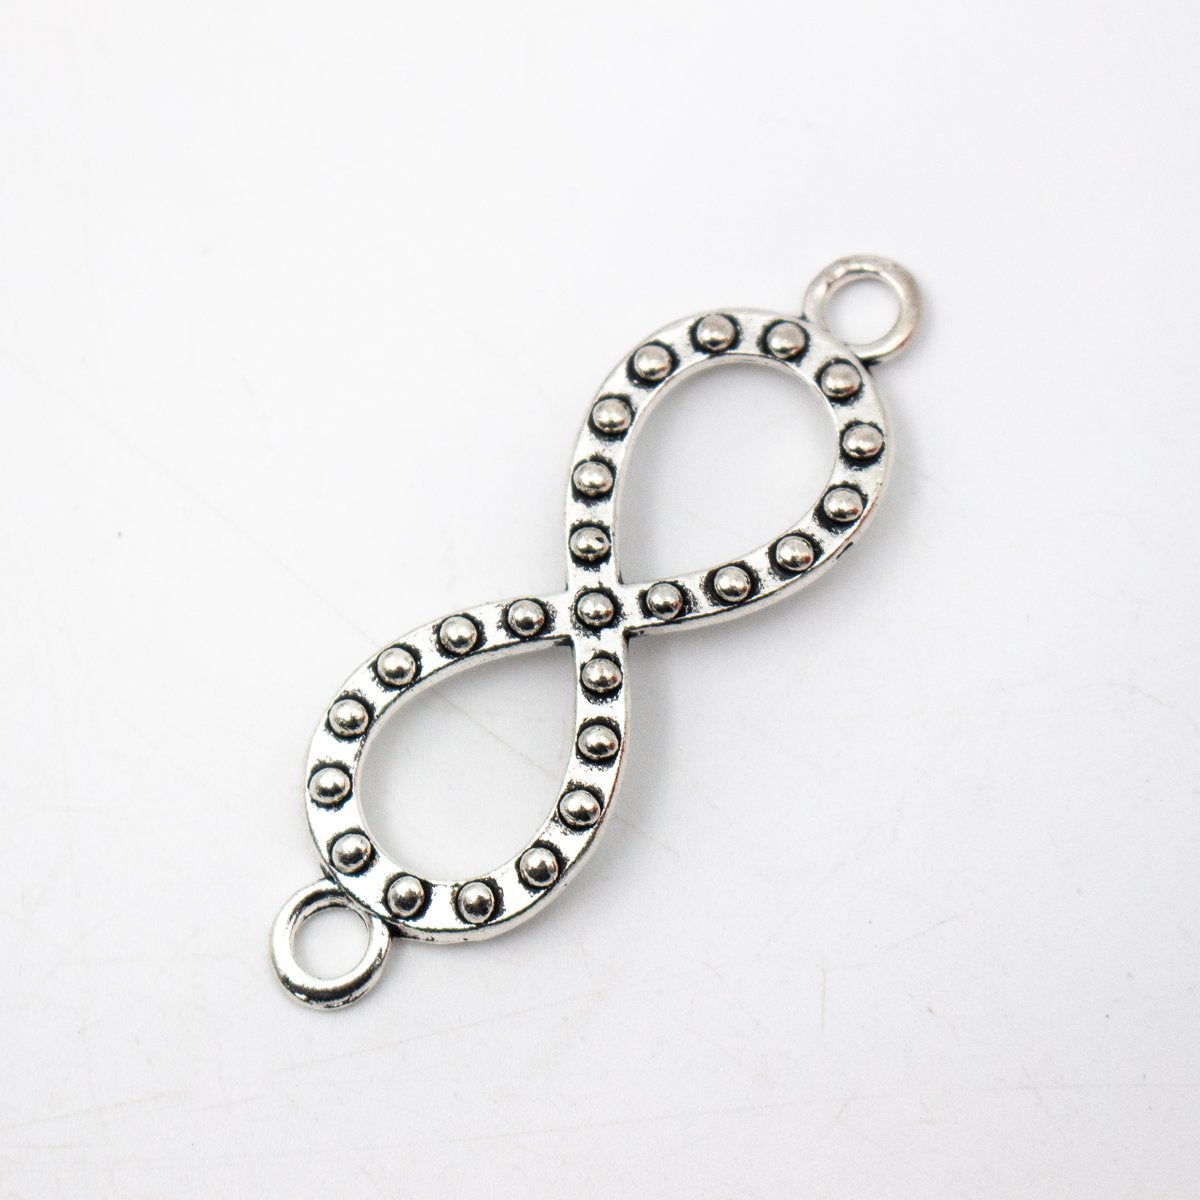 CHAUD! Produits de Promotion-5 unités pendentif infini en argent antique pour bracelet charmes bijoux trouver des fournisseurs D-3-374